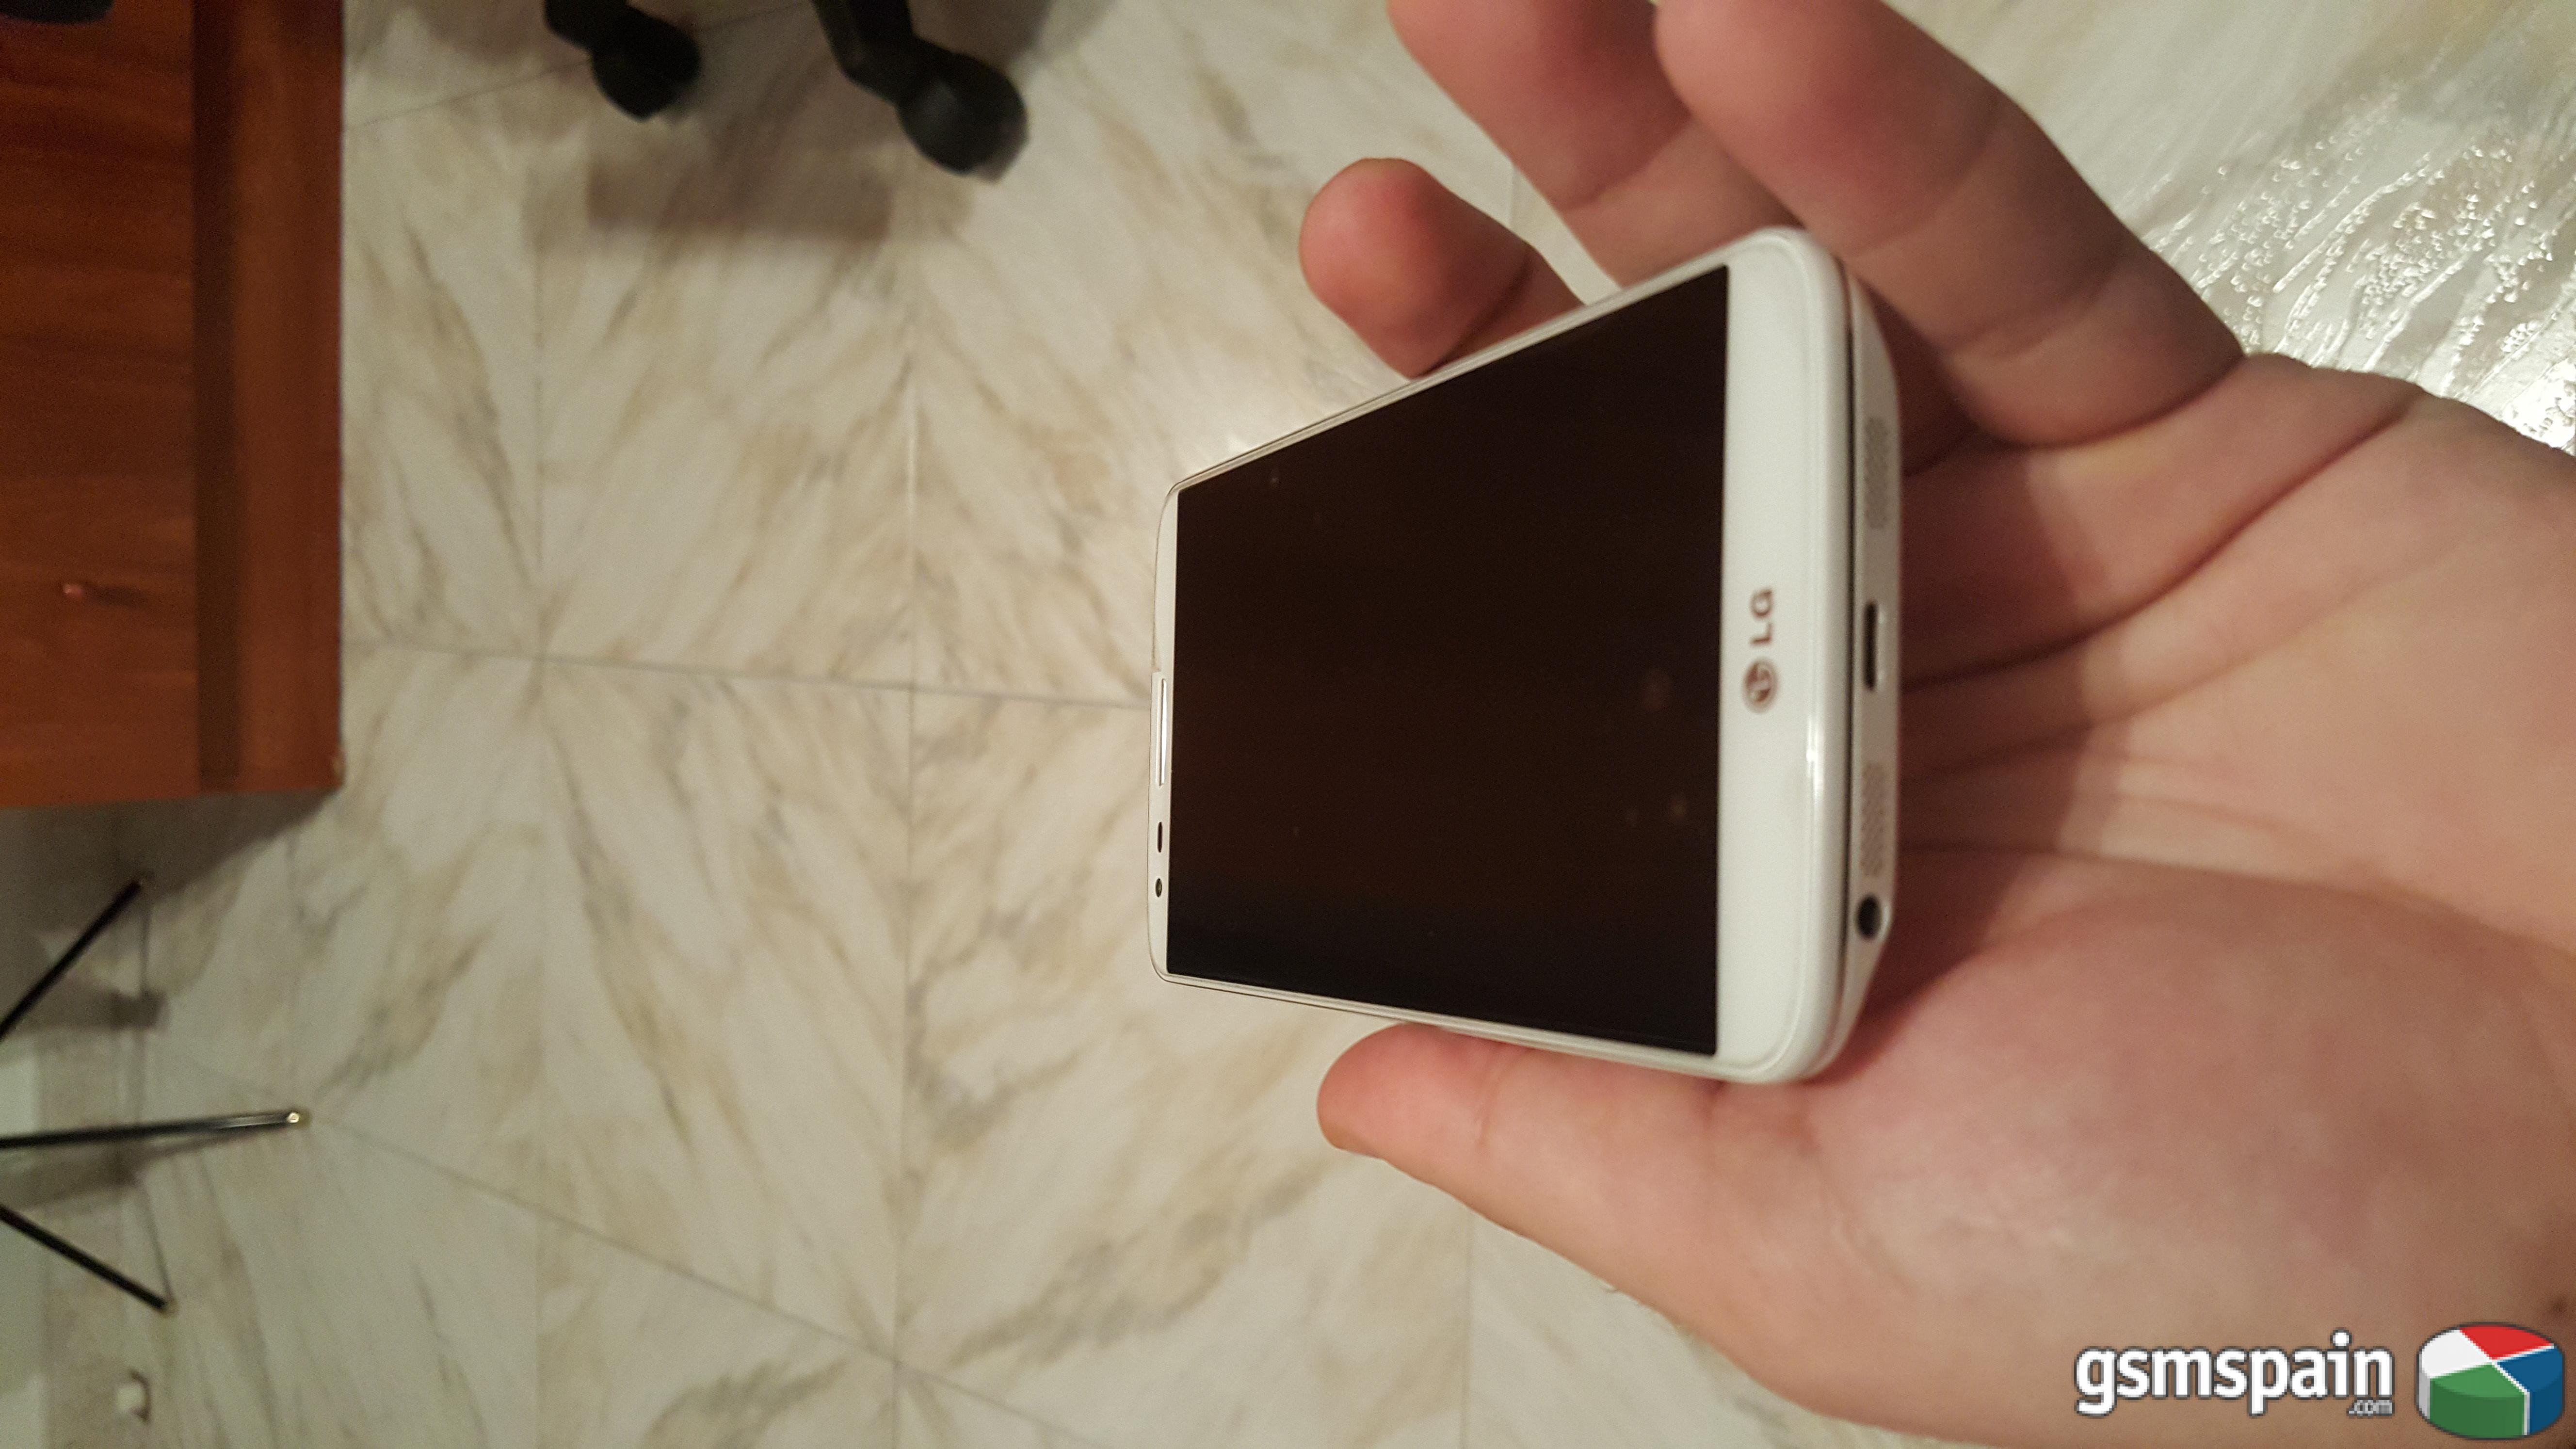 [VENDO] LG G2 16GB Blanco en perfecto estado